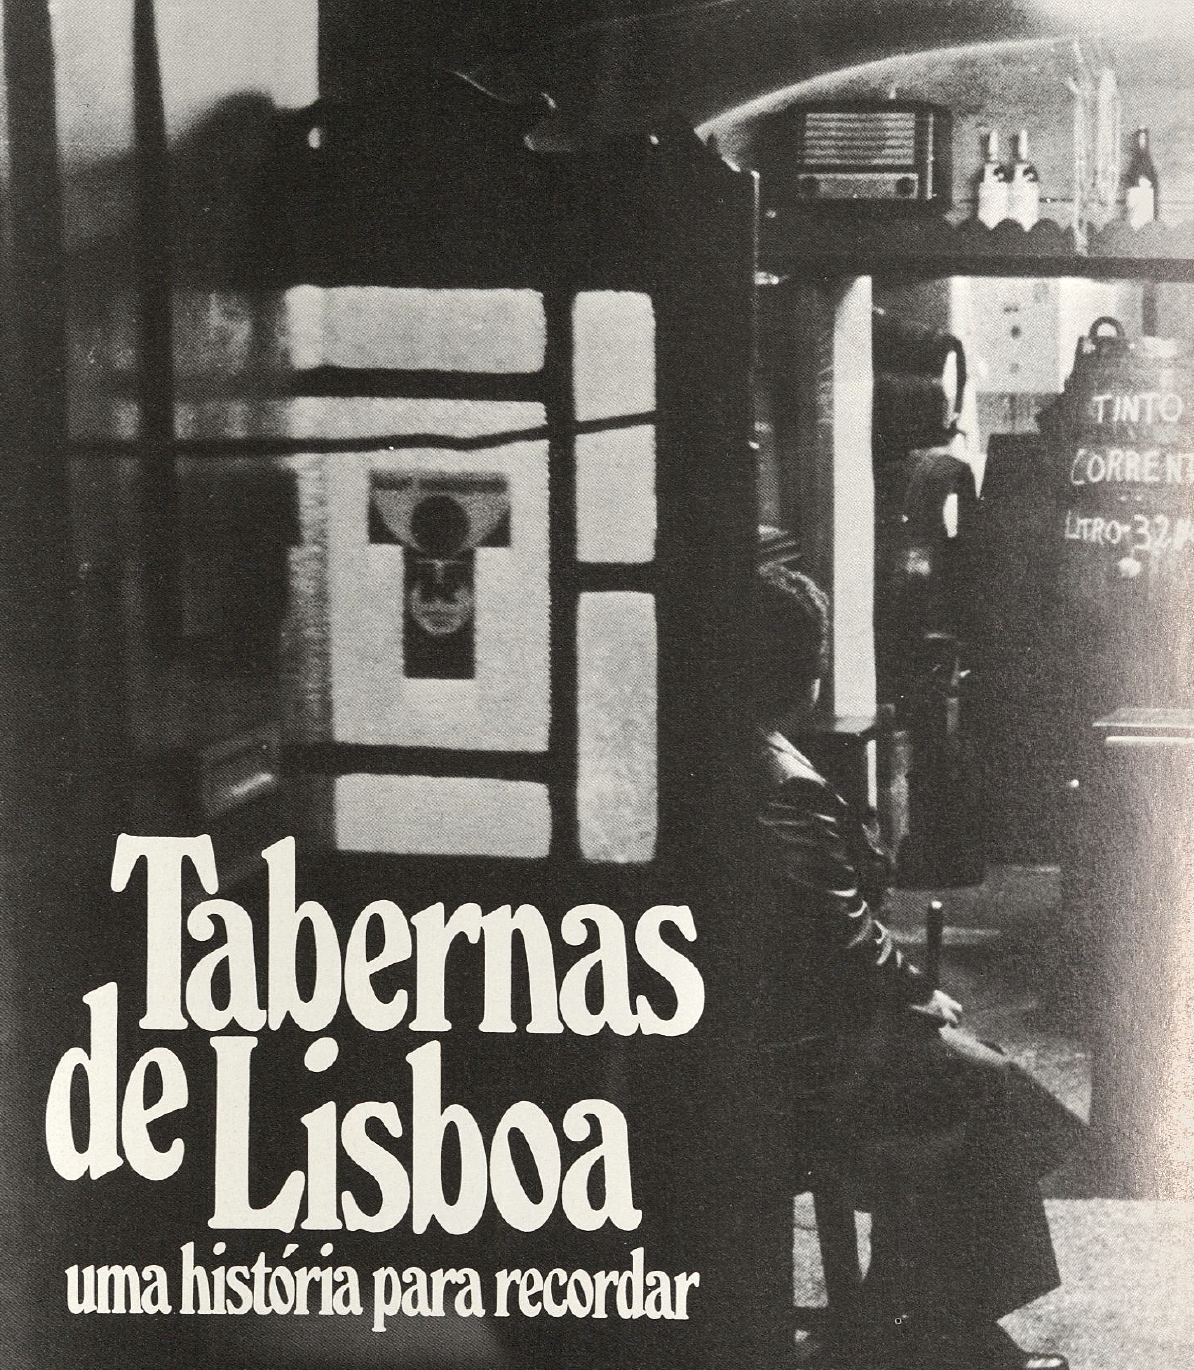 "Tabernas de Lisboa"